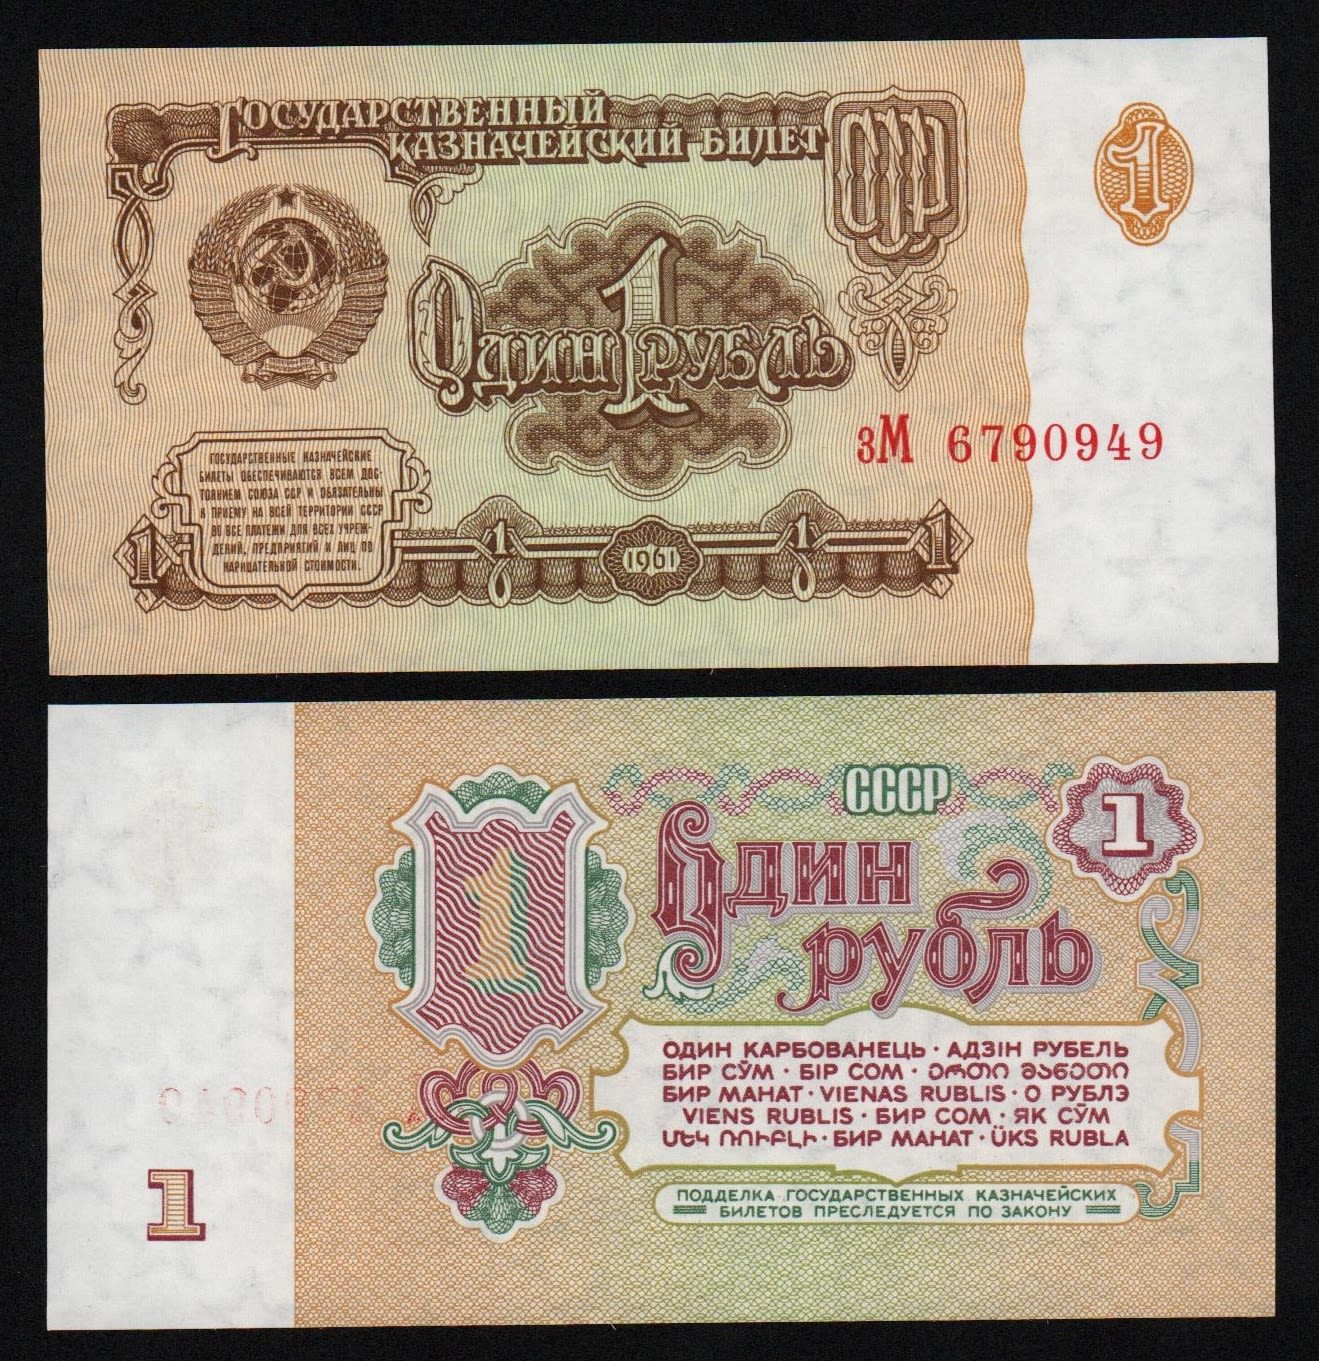 Купить 1 рубль 1961 год серия зМ, UNC! Из пачки, номера будут отличаться!